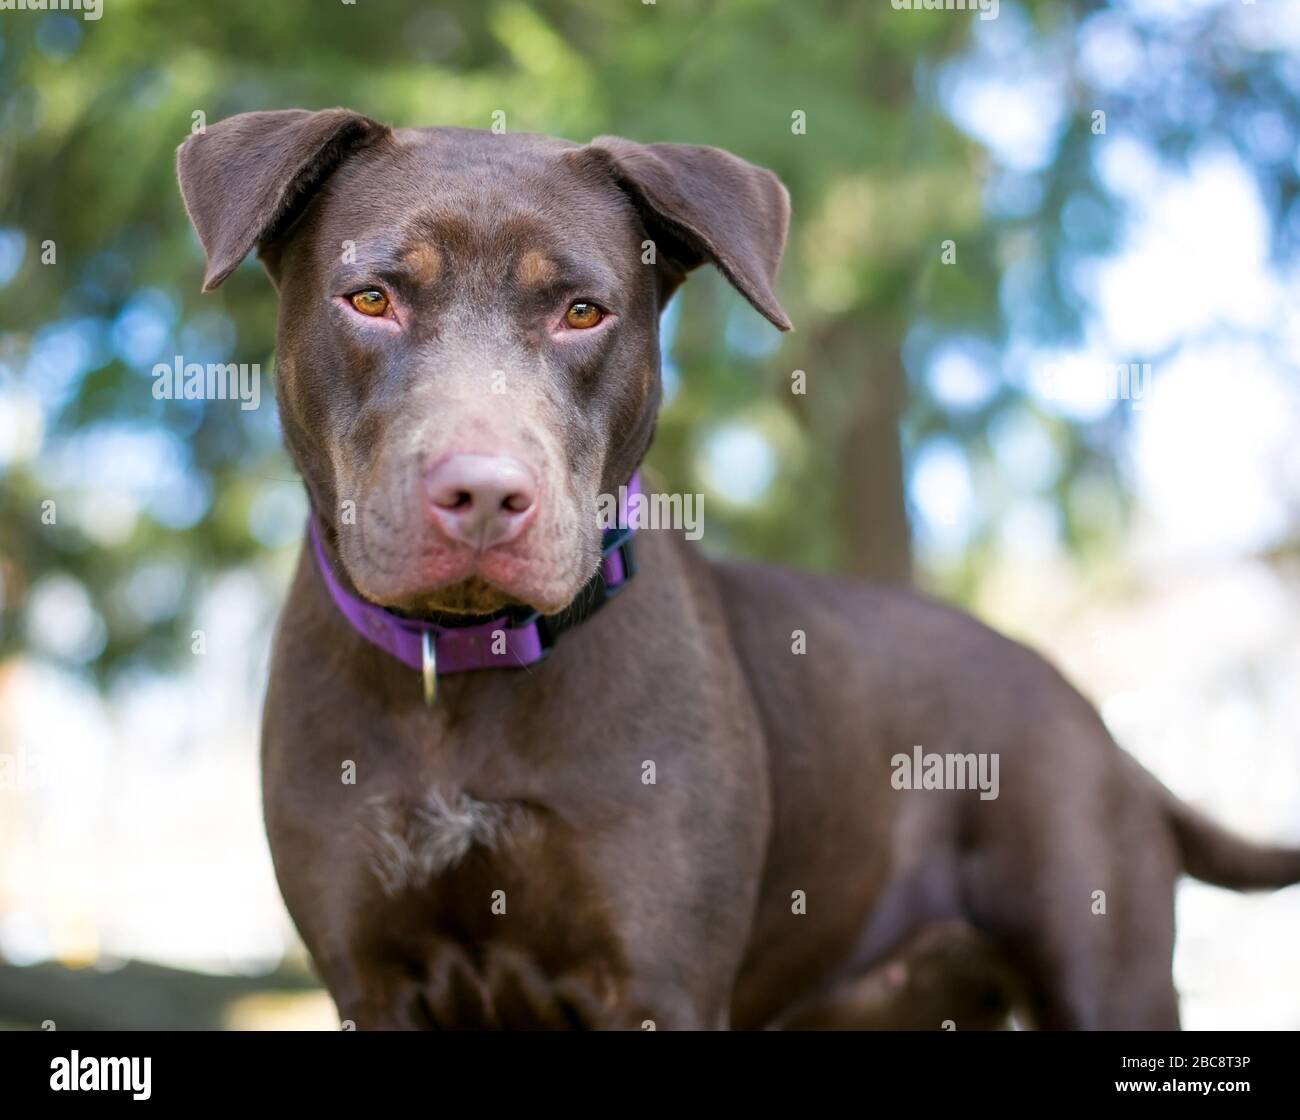 Chien mixte de race Chocolate Labrador Retriever, debout à l'extérieur avec une expression sérieuse, portant un col mauve Banque D'Images